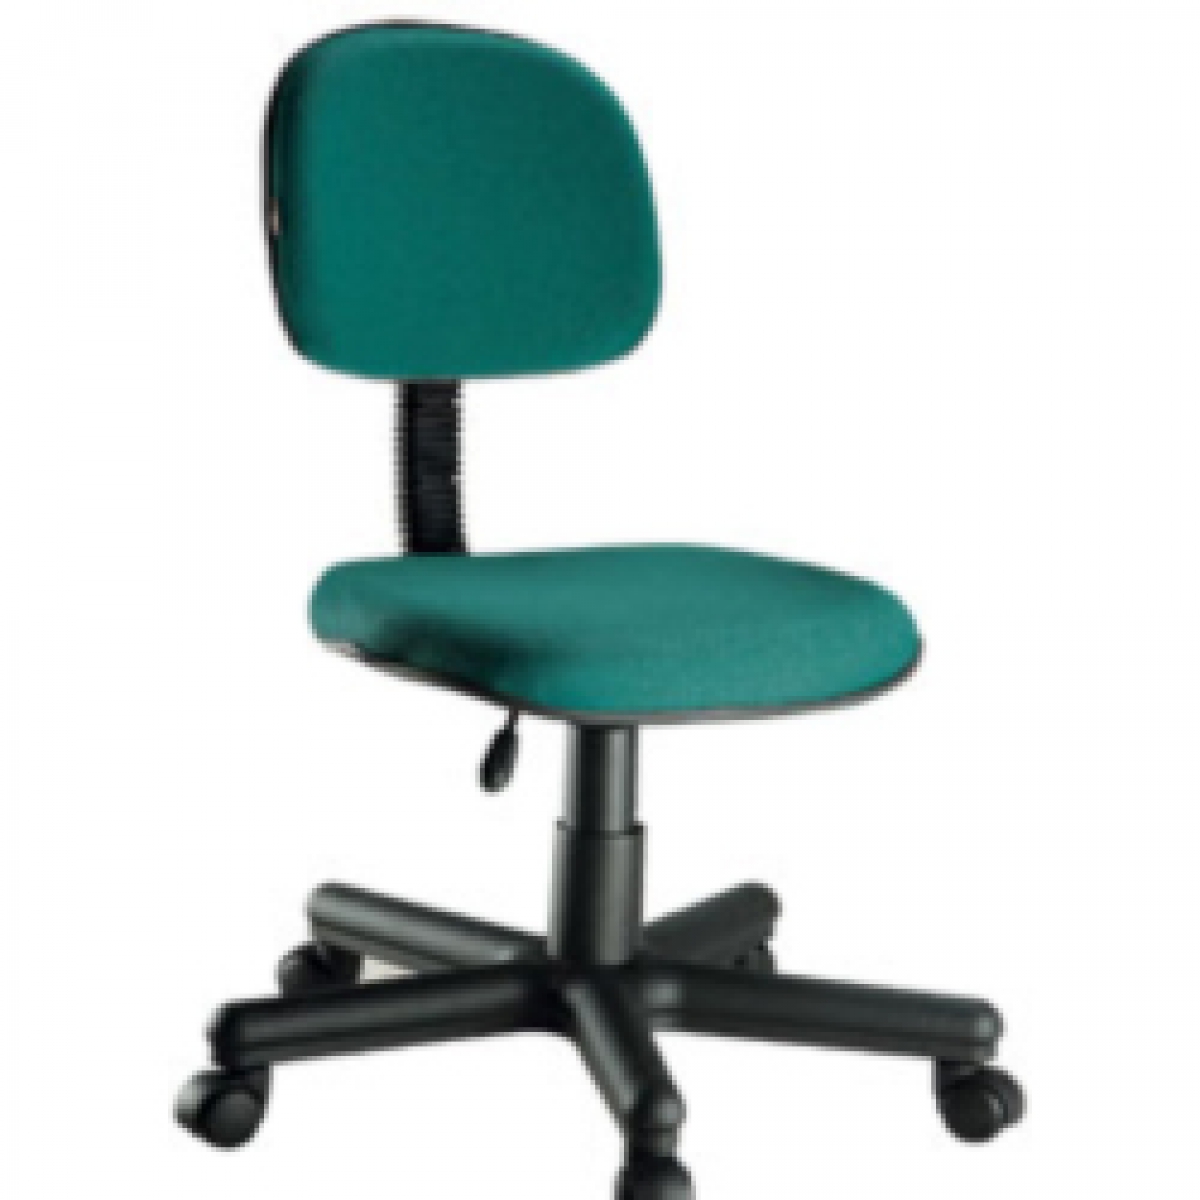 CAD - 16 Cadeira Para Escritório Secretaria Giratoria Economica Estofada Varias Cores